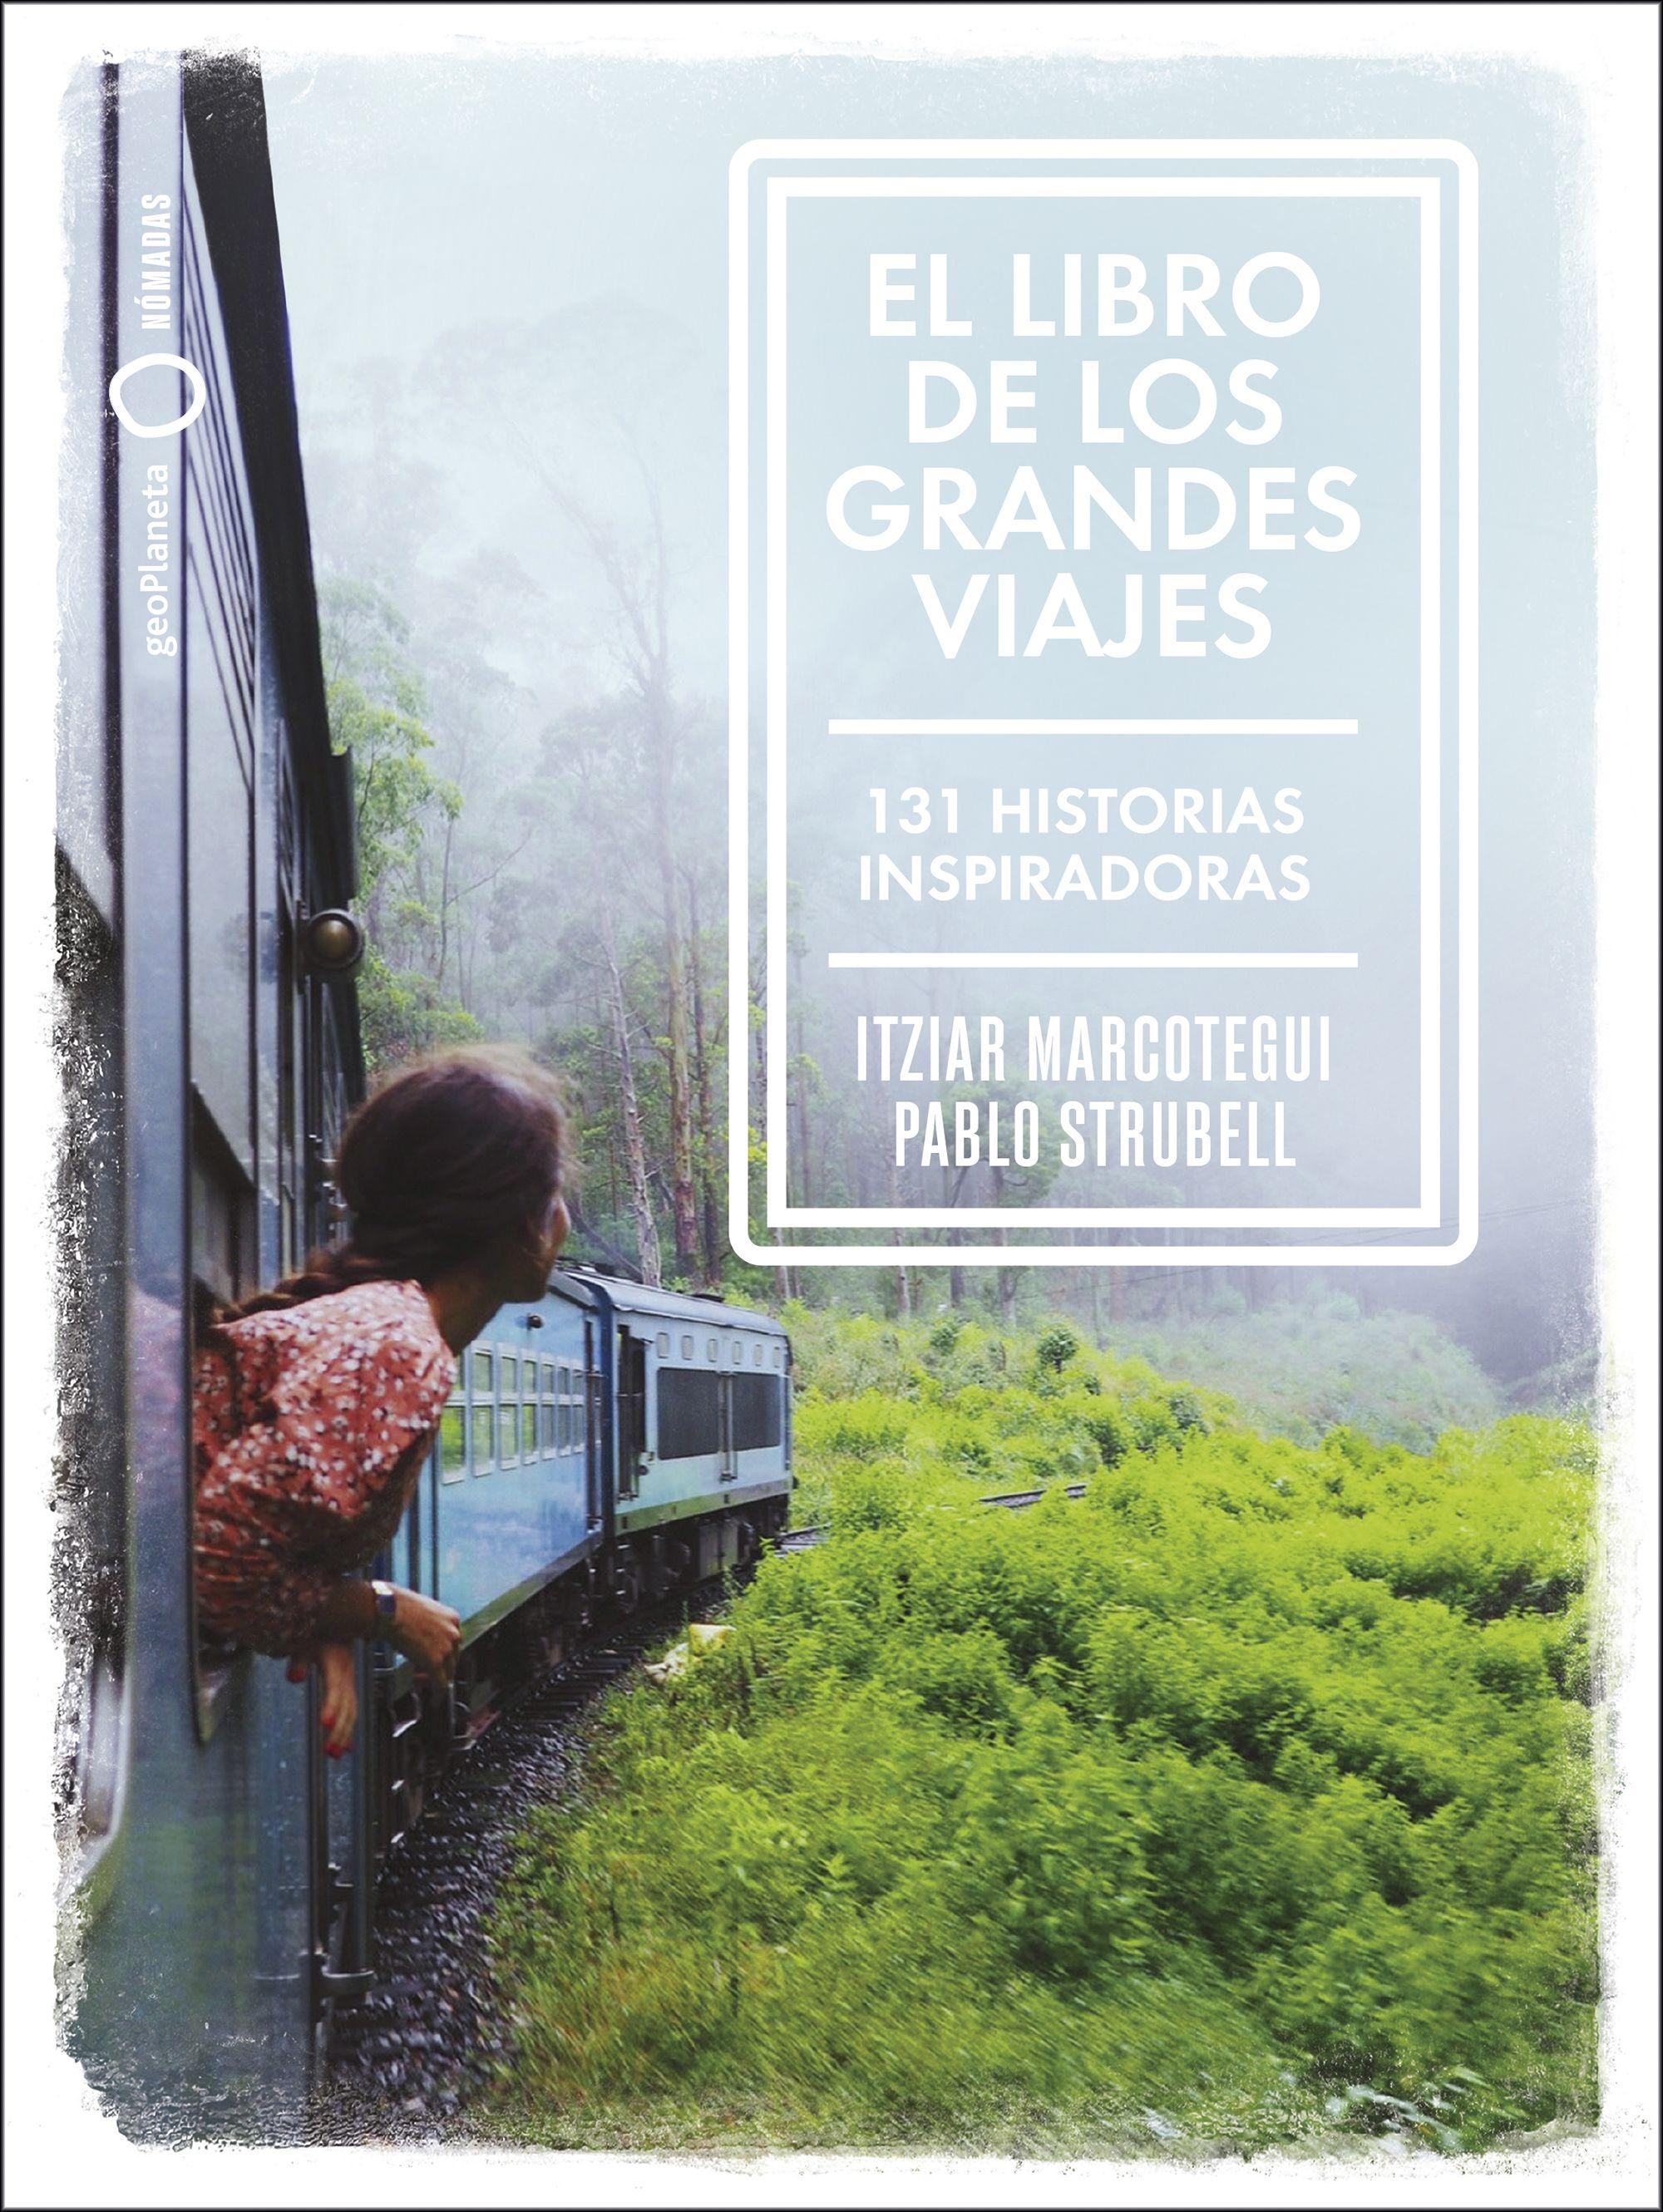 El libro de los grandes viajes "131 historias inspiradoras"